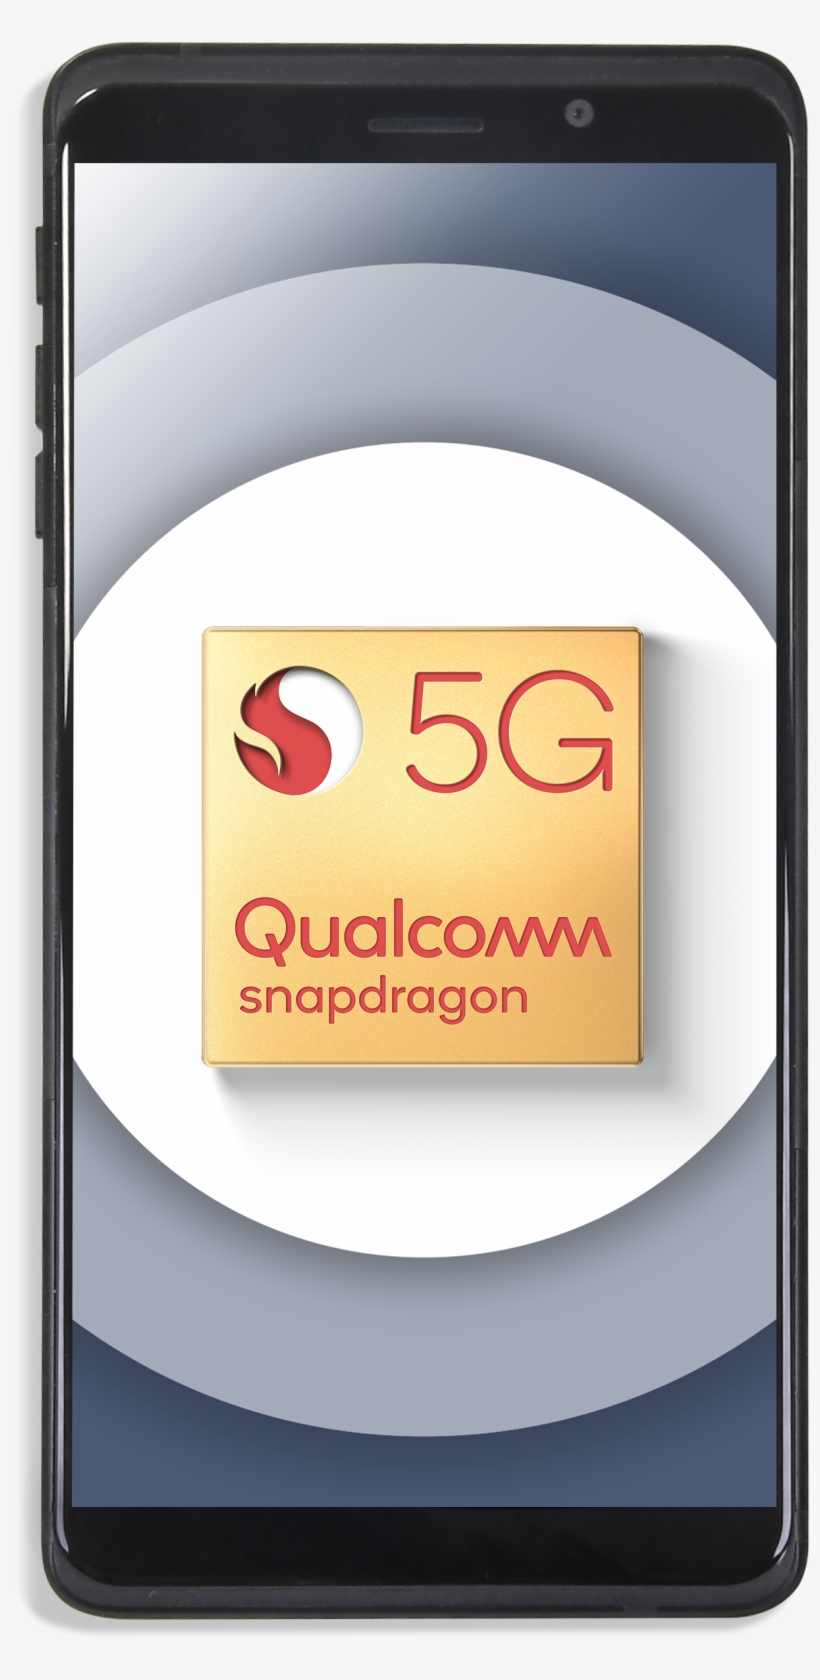 Qualcomm Snapdragon 5g Reference Design Gold Badge - Qualcomm Snapdragon, transparent png #7837229